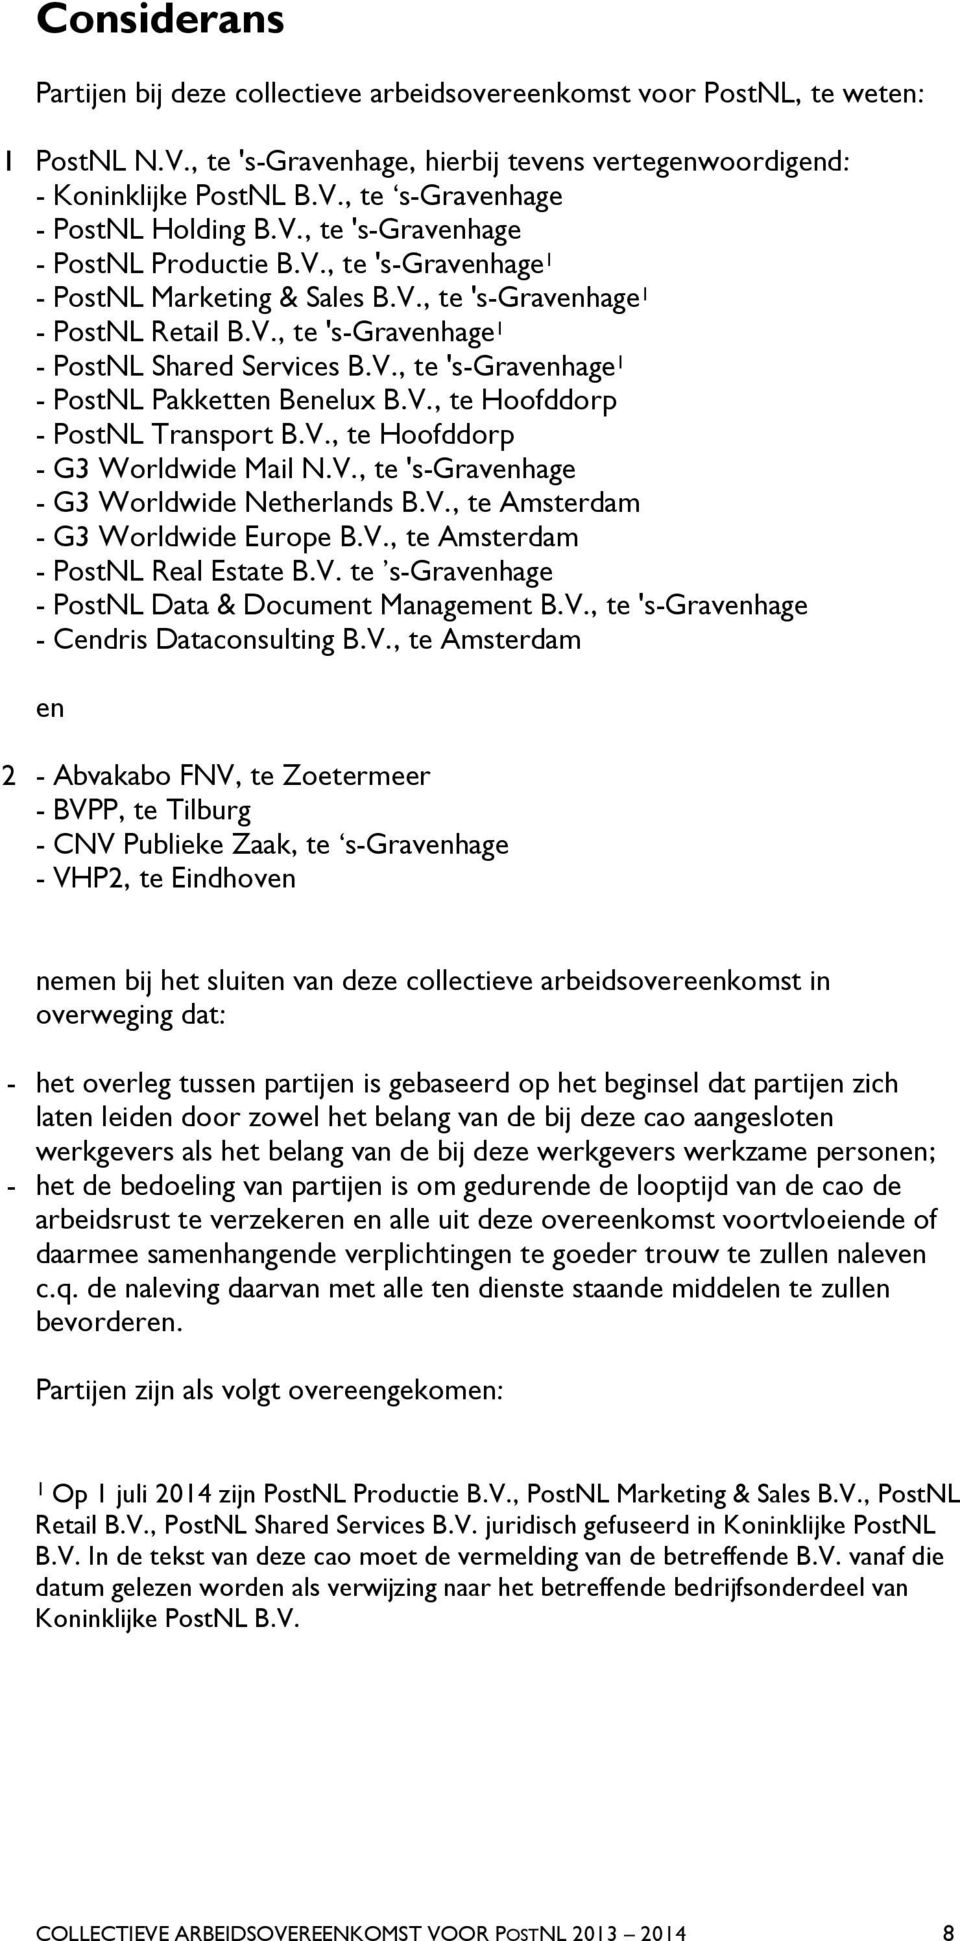 V., te Hoofddorp - PostNL Transport B.V., te Hoofddorp - G3 Worldwide Mail N.V., te 's-gravenhage - G3 Worldwide Netherlands B.V., te Amsterdam - G3 Worldwide Europe B.V., te Amsterdam - PostNL Real Estate B.